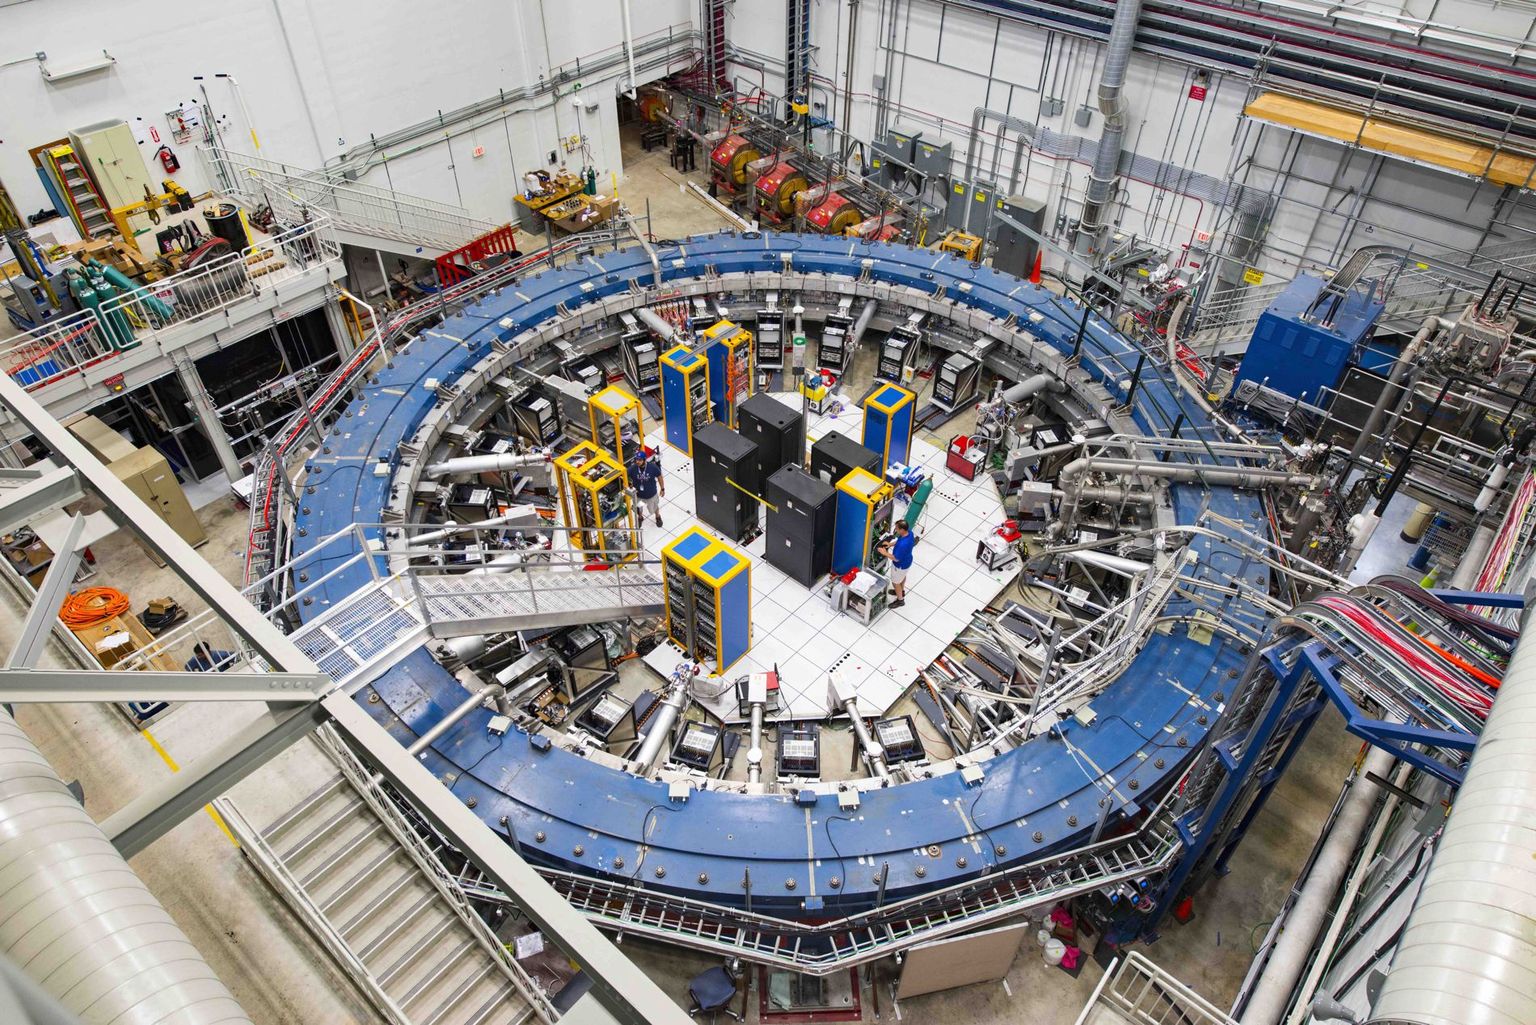 Dieser Ringmagnet ist ein Bestandteil des Experiments, mit dem am Fermilab in der Nähe von Chicago das magnetische Dipolmoment von Myonen sehr präzise gemessen wird.